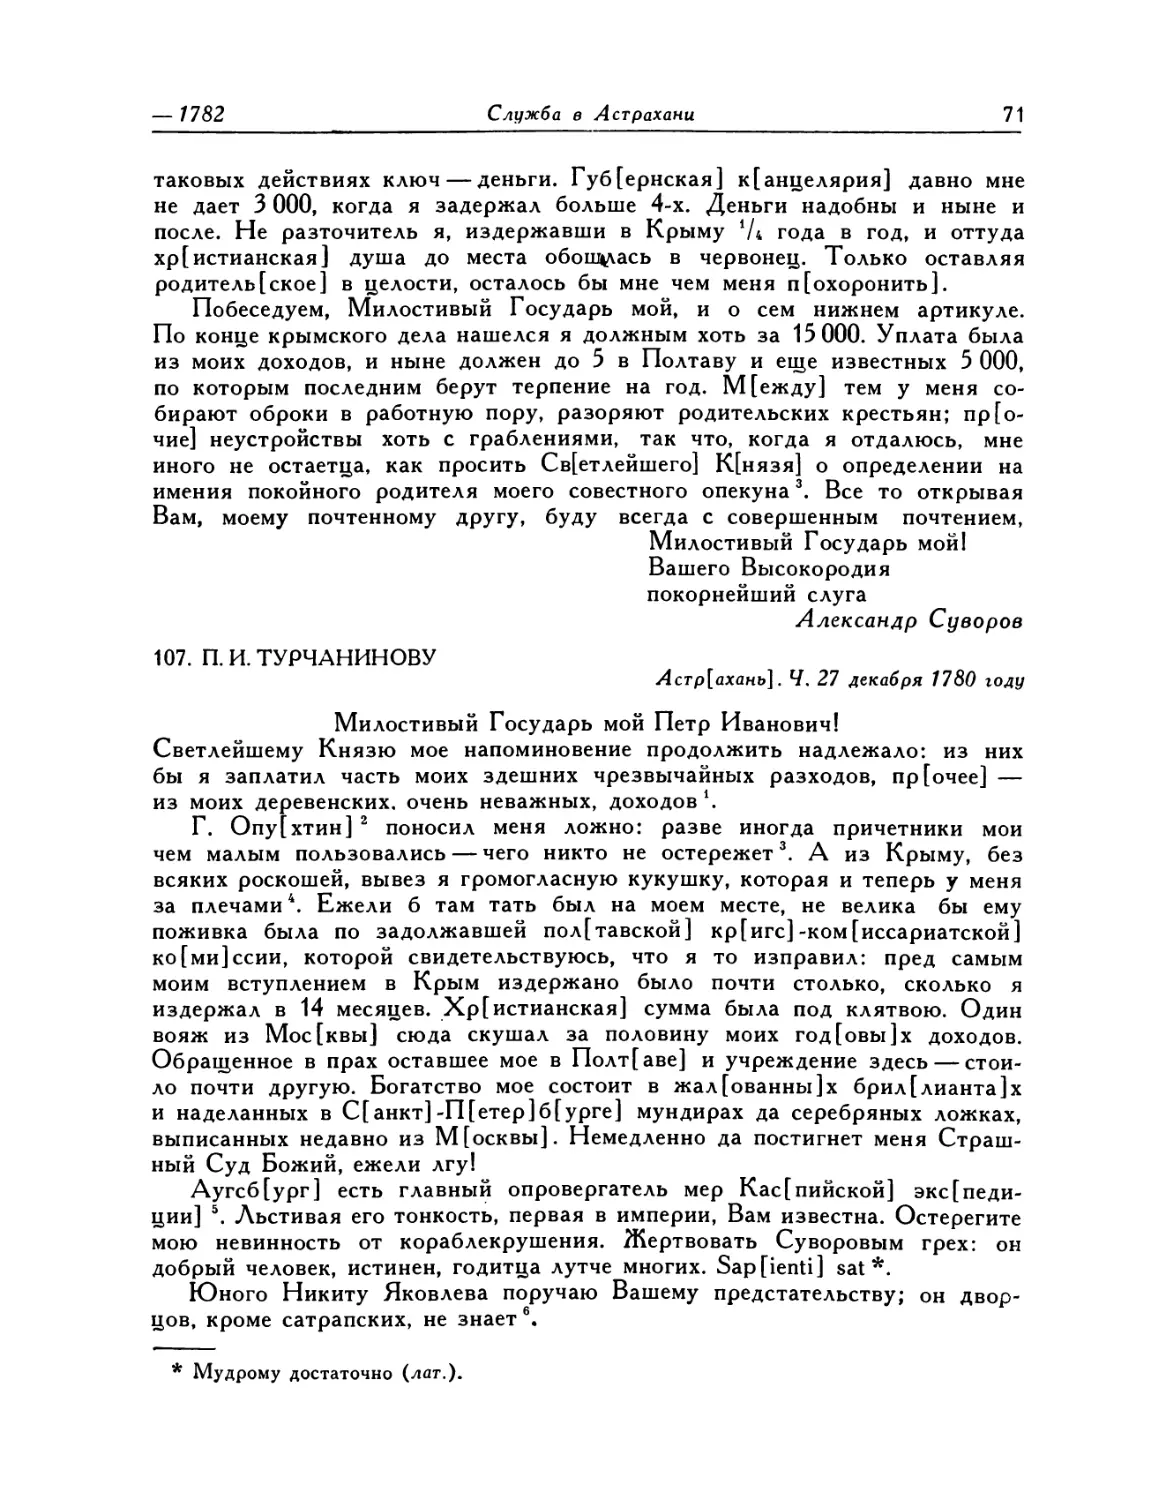 107. П.И.Турчанинову. 27.XII.1780